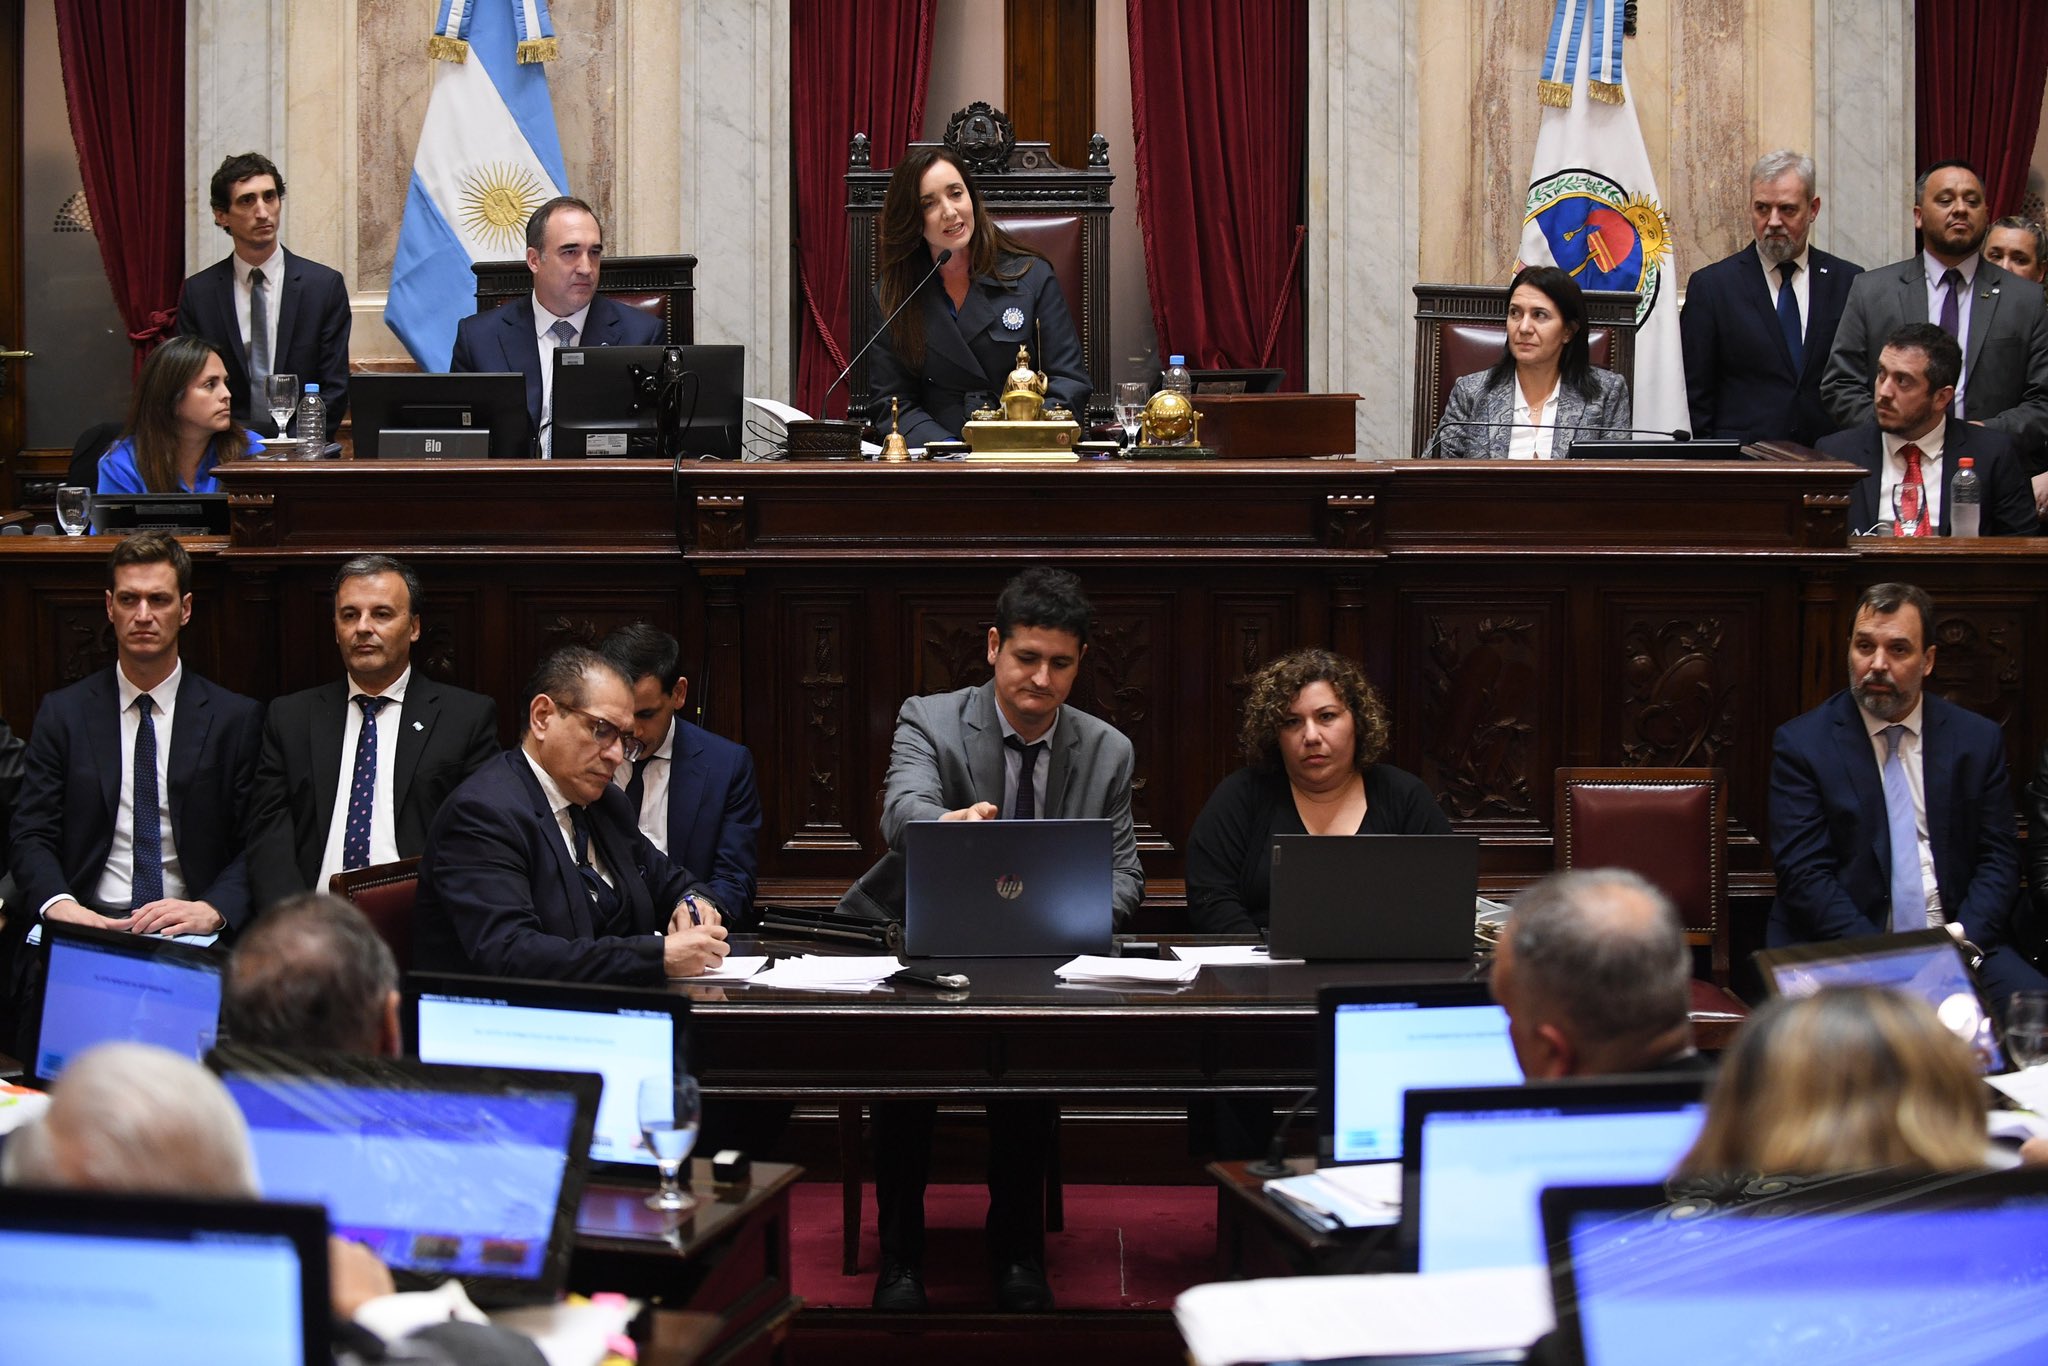 La vicepresidenta, Victoria Villarruel, desempató la votación en el Senado